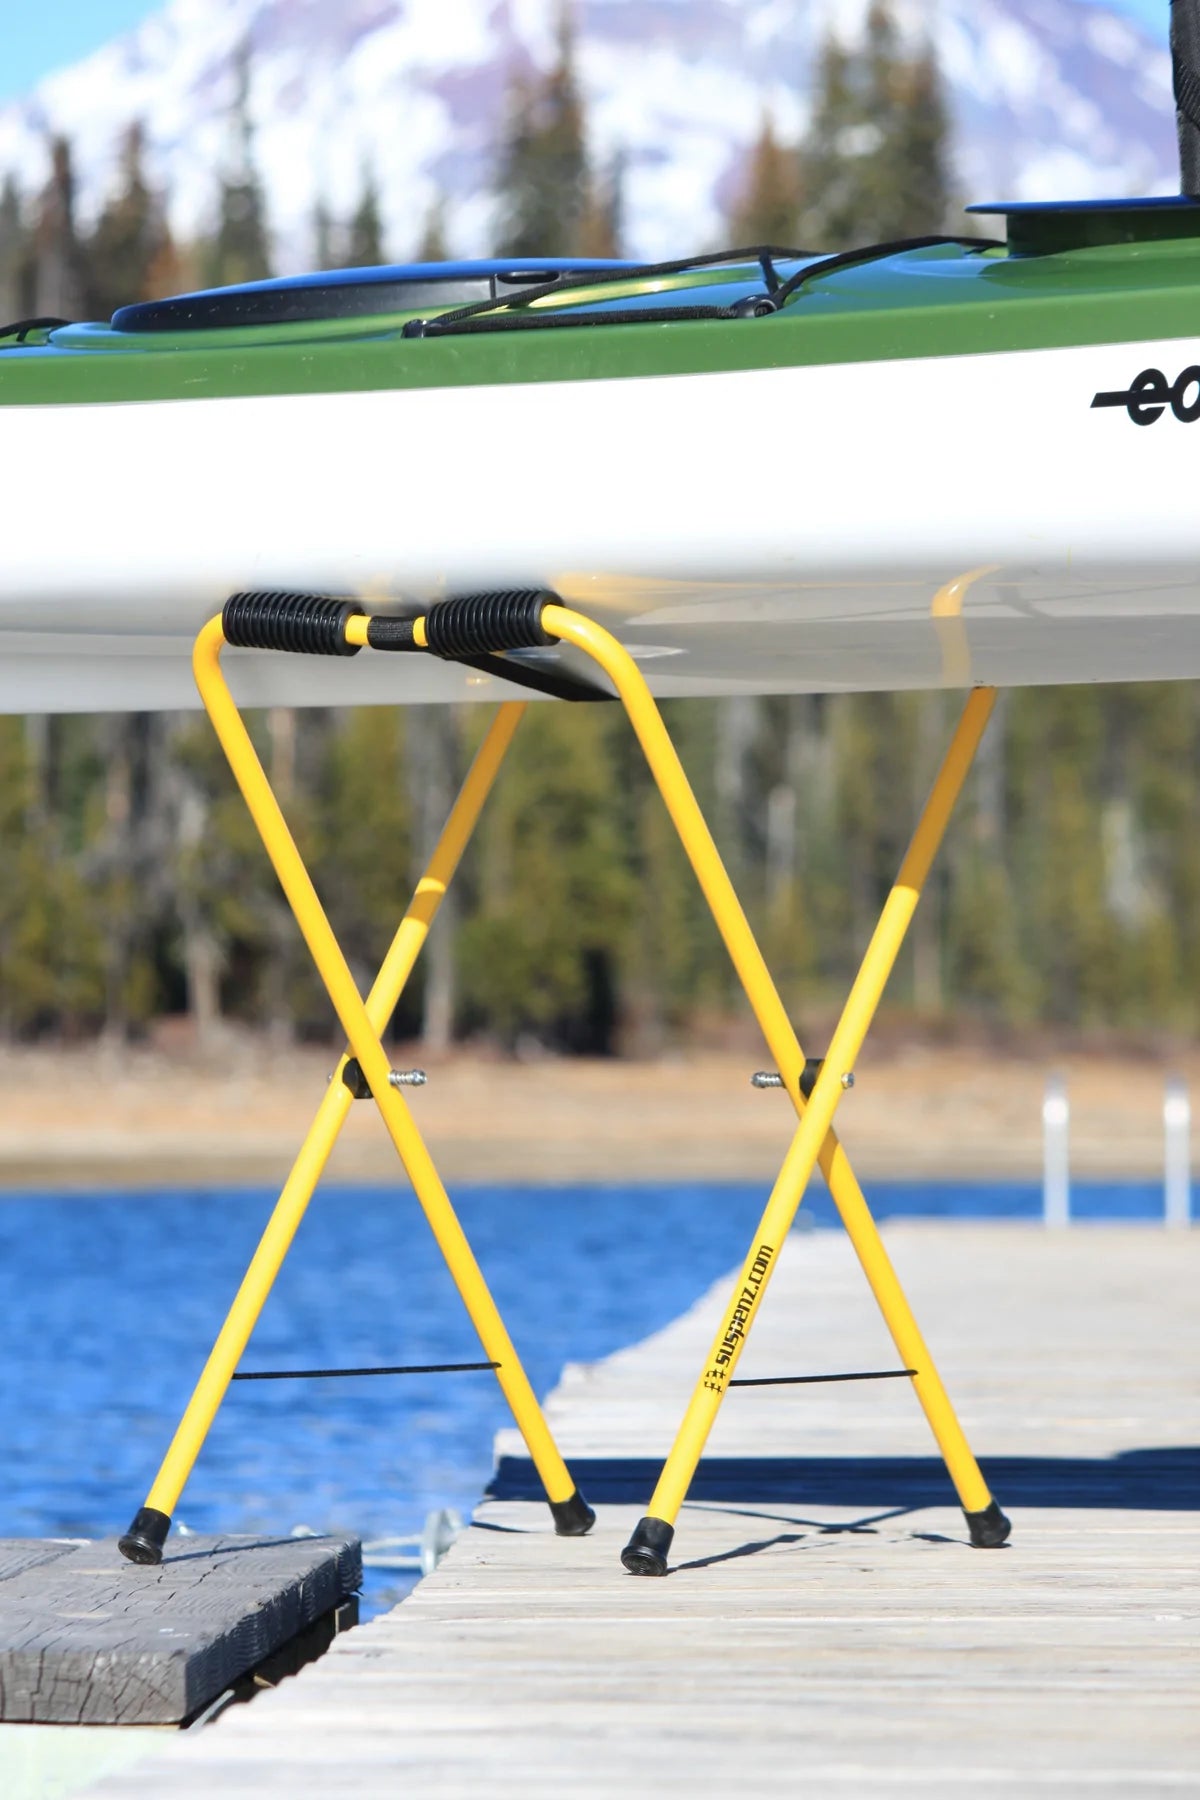 Universal Portable Kayak Storage Stands - Suspenz